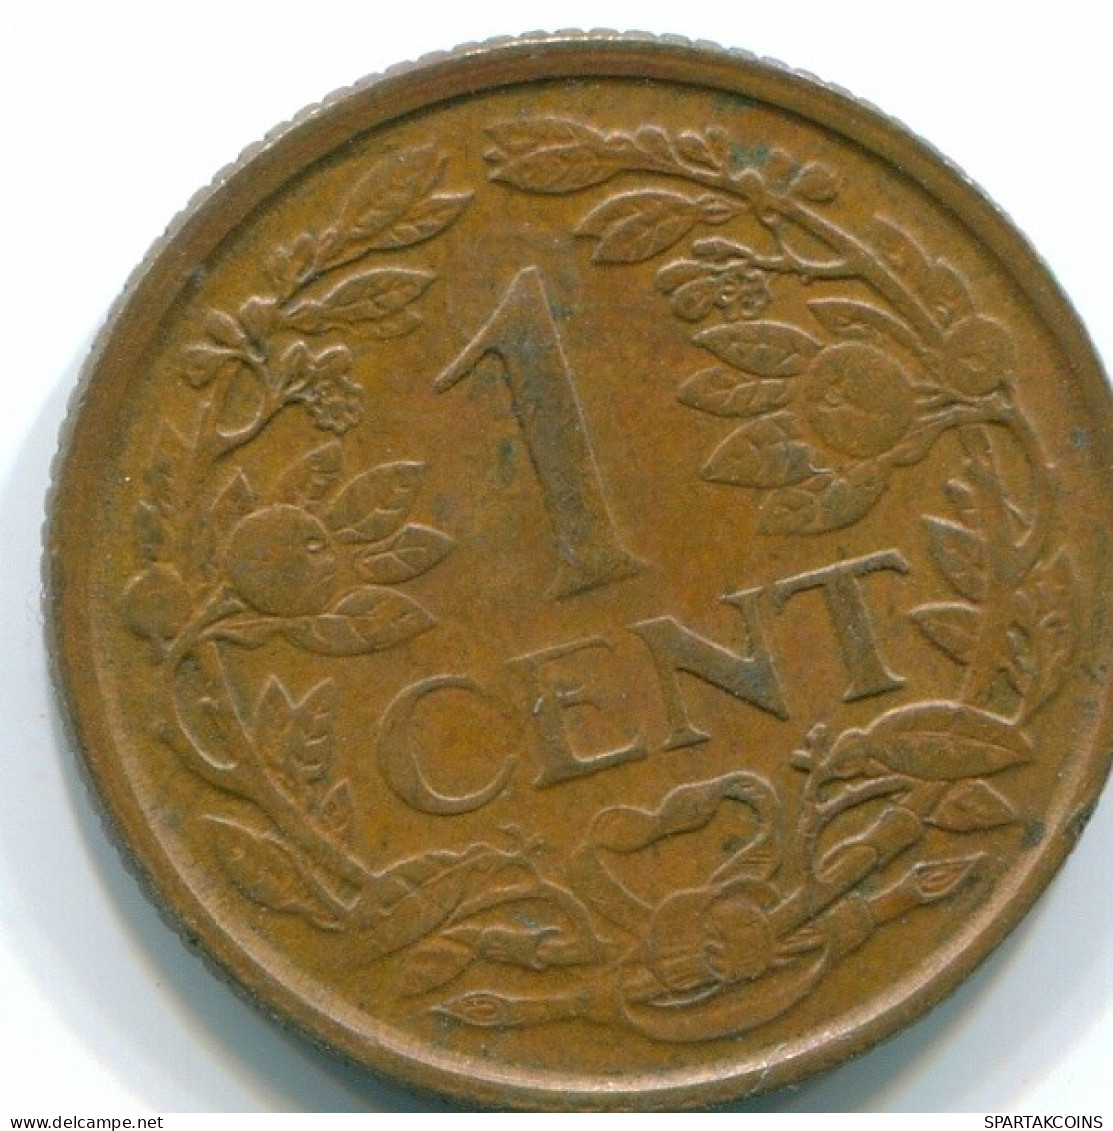 1 CENT 1968 NETHERLANDS ANTILLES Bronze Fish Colonial Coin #S10804.U.A - Antilles Néerlandaises